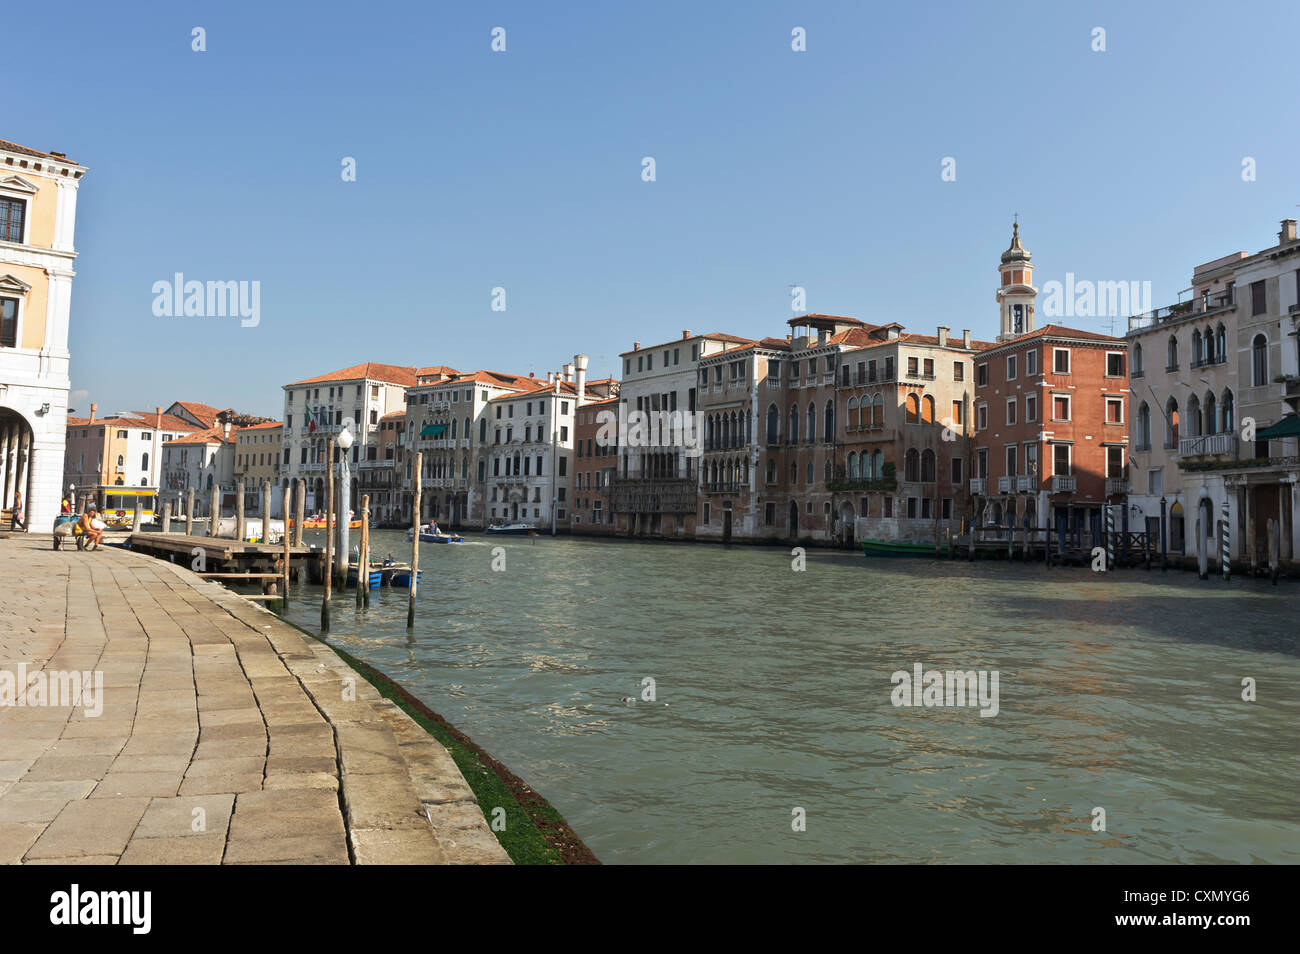 Grand Canal by Rialto Bridge, Venice, Italy. Stock Photo